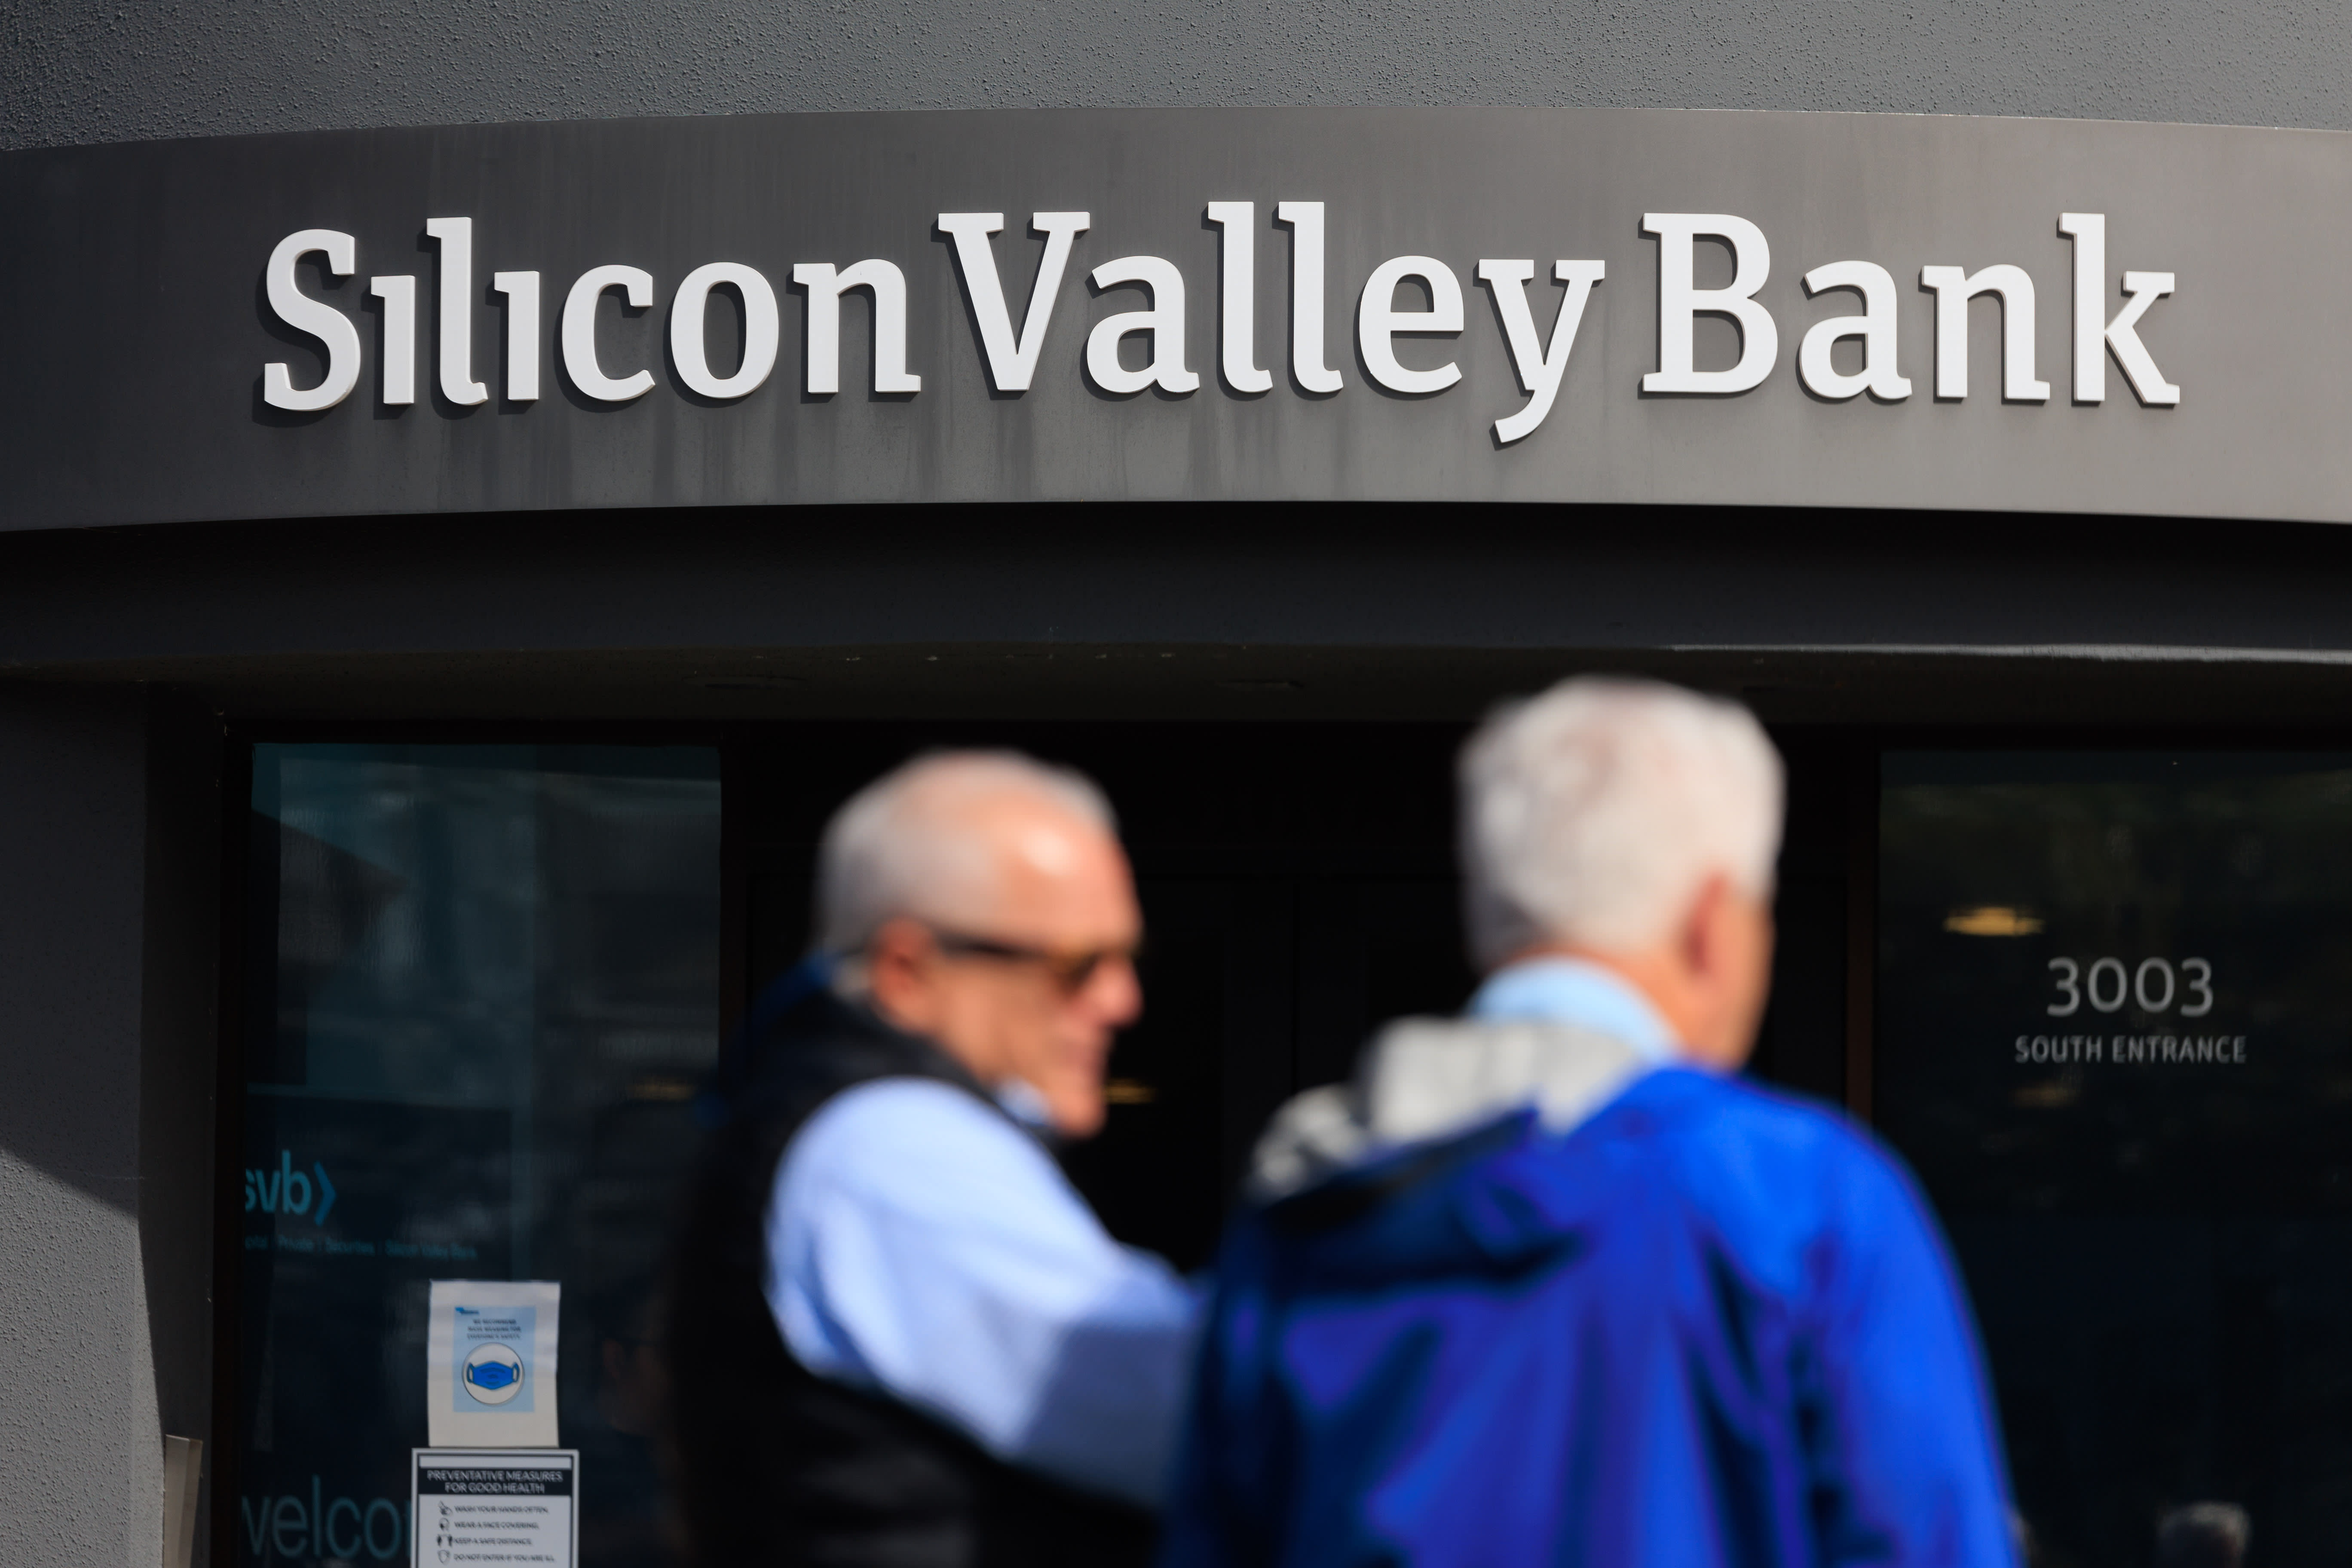 Private equity-firma’s Apollo en KKR behoren tot degenen die bankleningen in Silicon Valley beoordelen